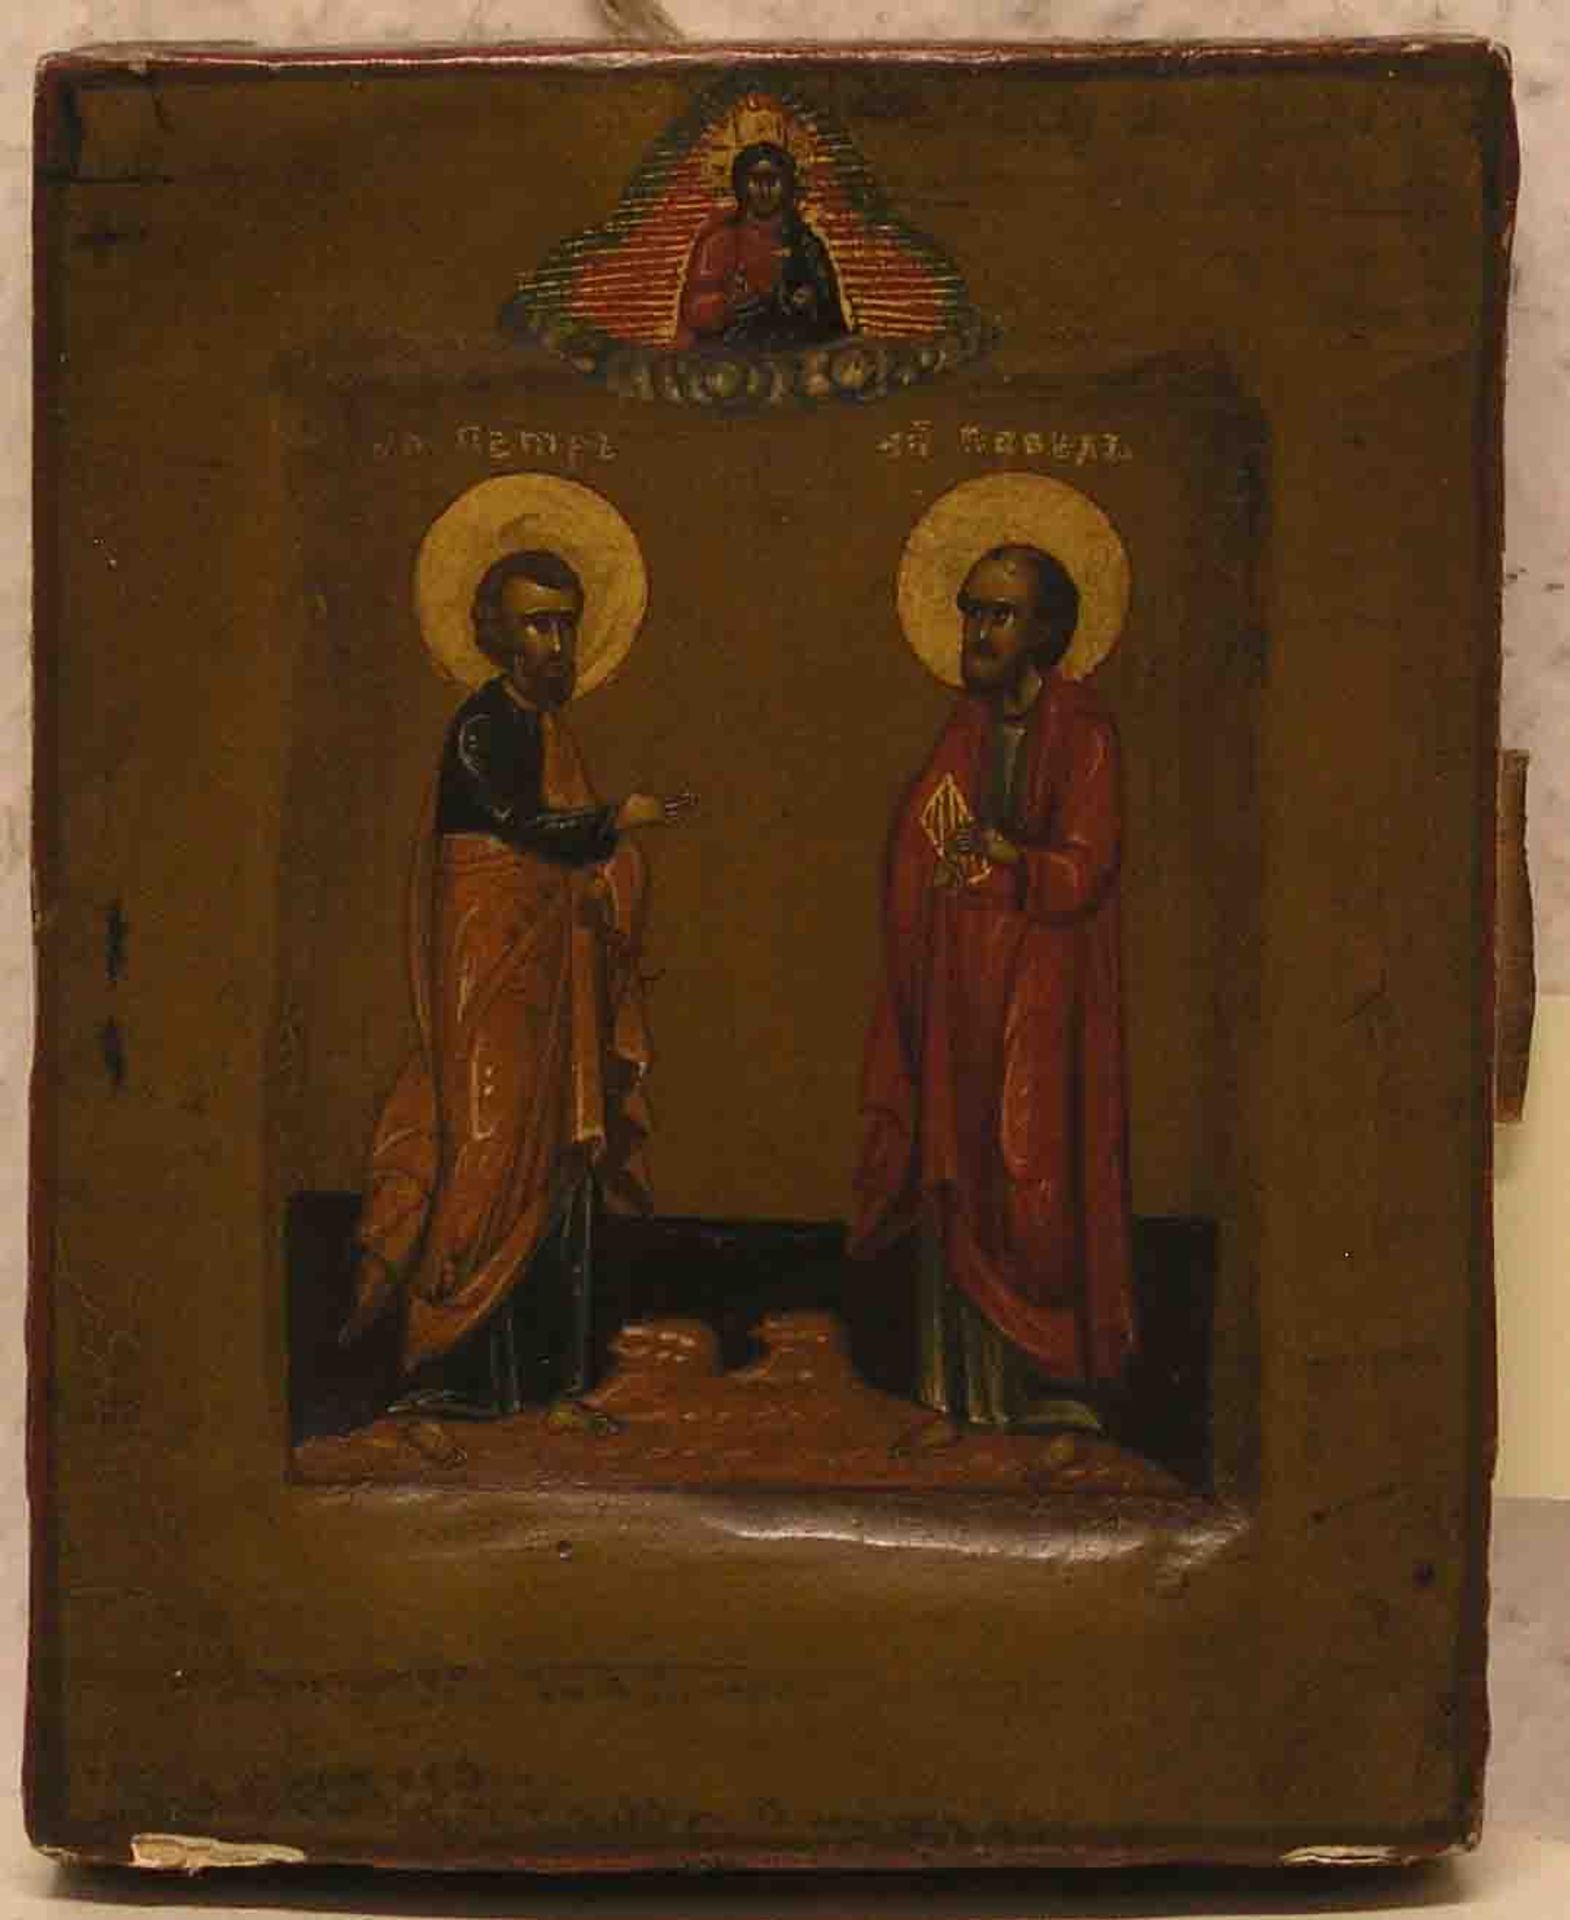 Hl. Petrus und Hl. Pavel. Russische Ikone um 1800. 13 x 10,5cm, Rand beschädigt.